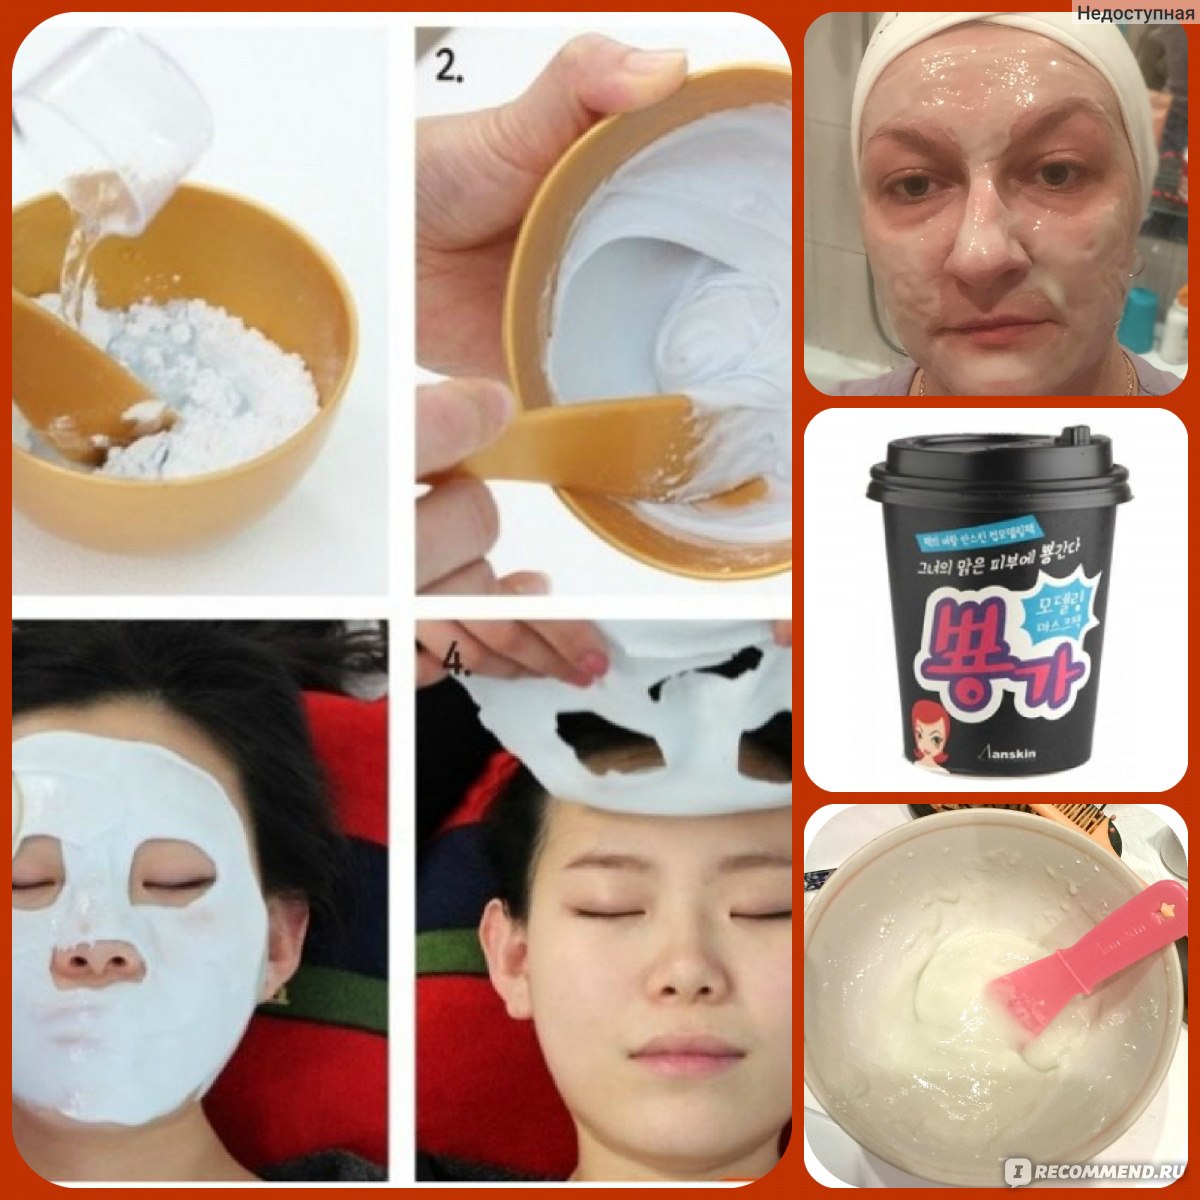 Как наносить альгинатную маску в домашних условиях. Альгинатная маска кумихо. Альдегидная маска для лица Корея. Маски альгинатные для лица Корея.